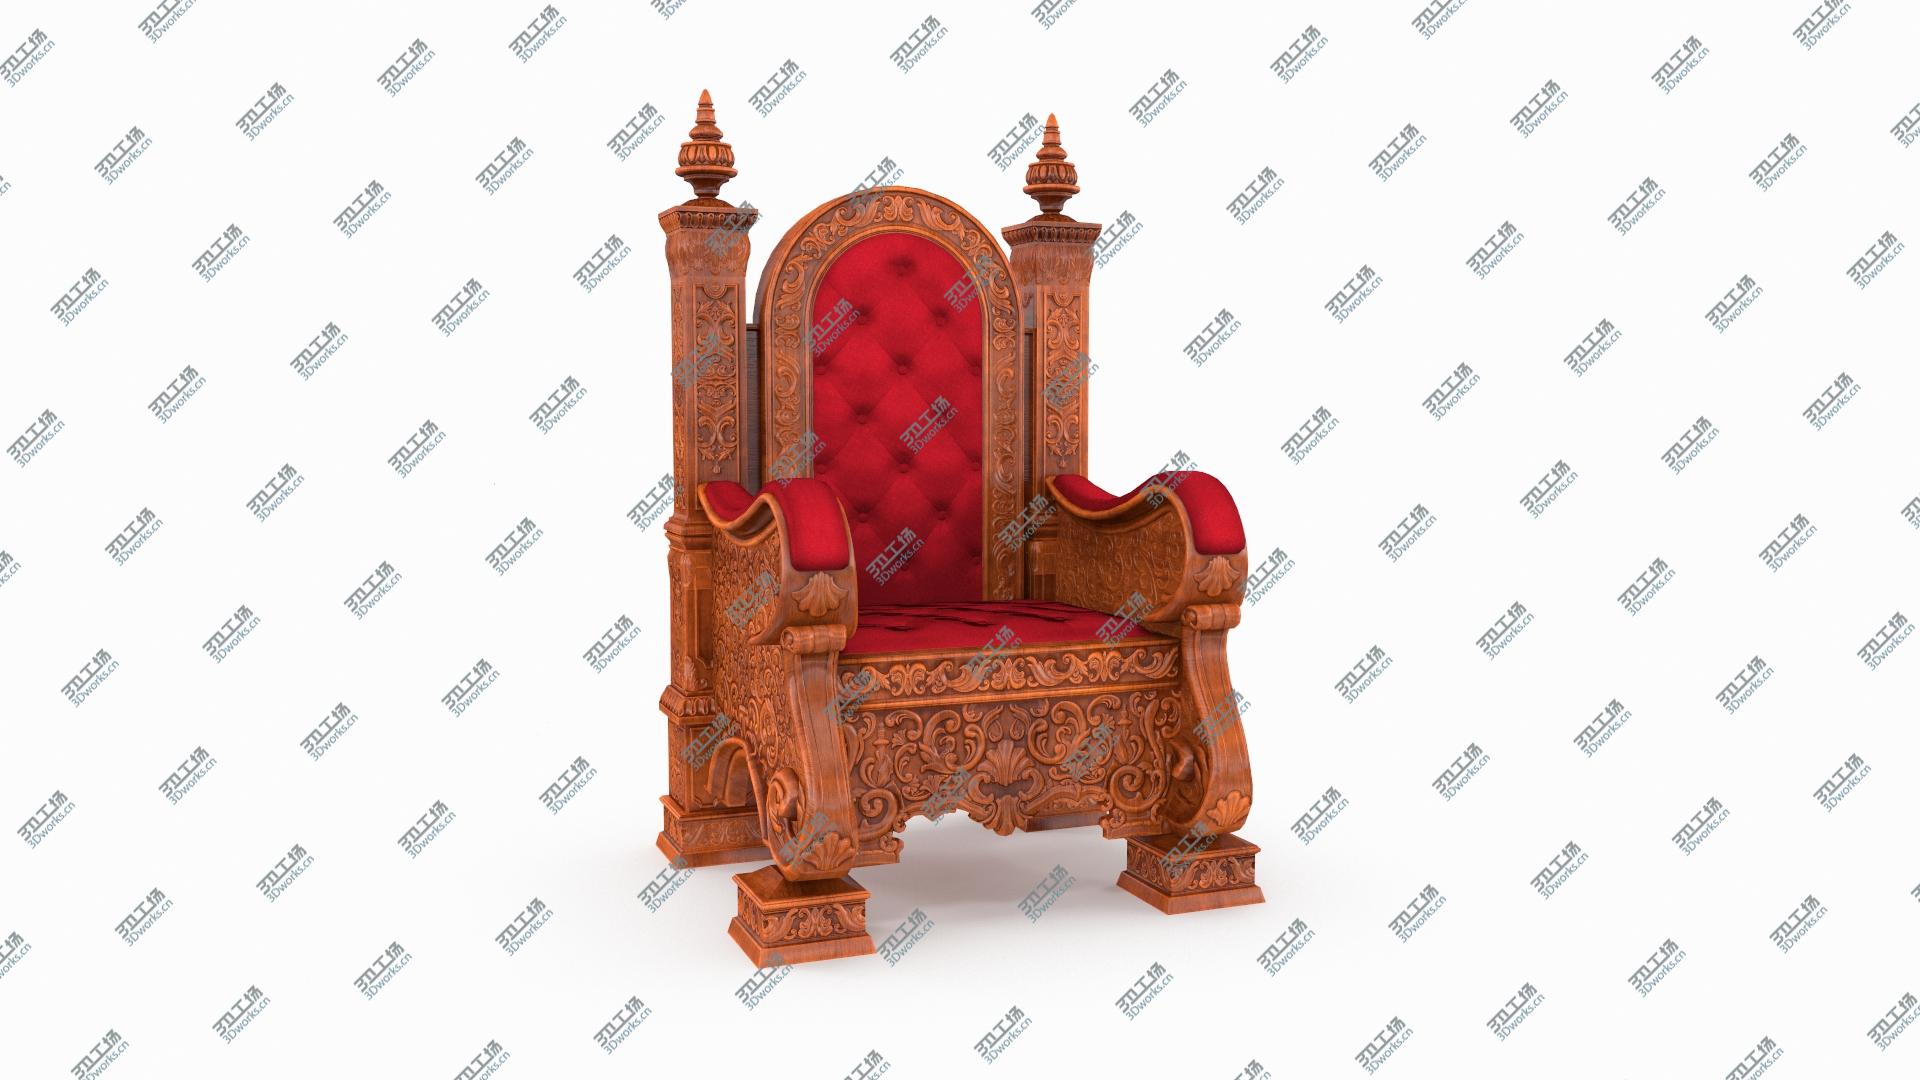 images/goods_img/202105074/Wooden Throne 3D model/3.jpg